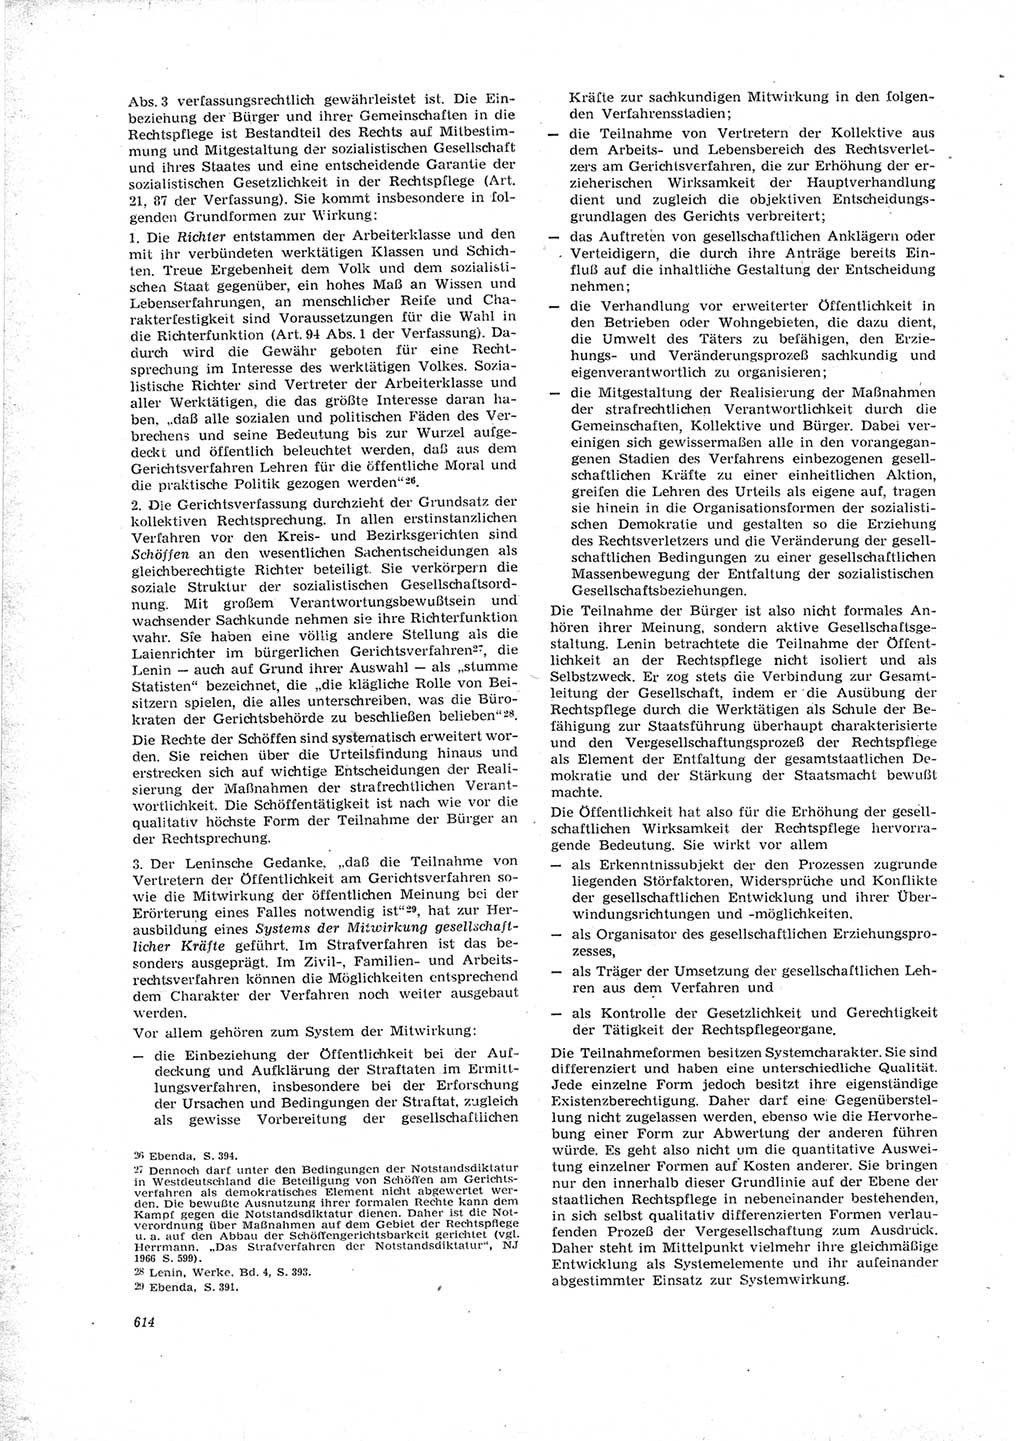 Neue Justiz (NJ), Zeitschrift für Recht und Rechtswissenschaft [Deutsche Demokratische Republik (DDR)], 23. Jahrgang 1969, Seite 614 (NJ DDR 1969, S. 614)